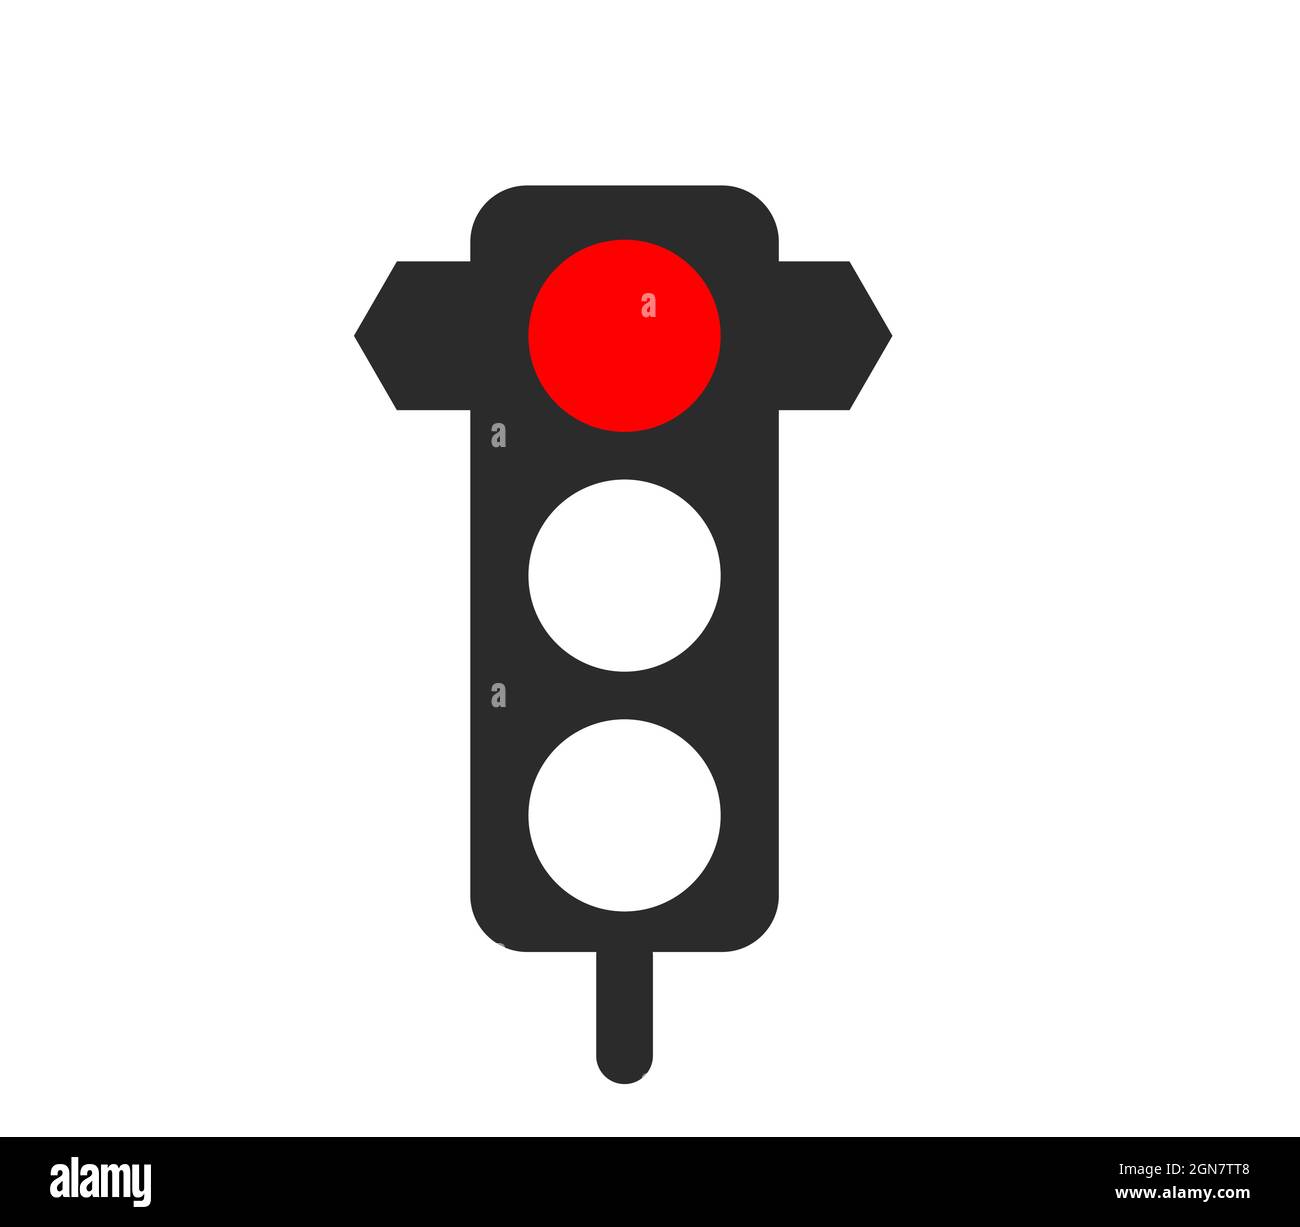 Ilustración de vector de señal de tráfico roja, señal de detención de tráfico Ilustración del Vector